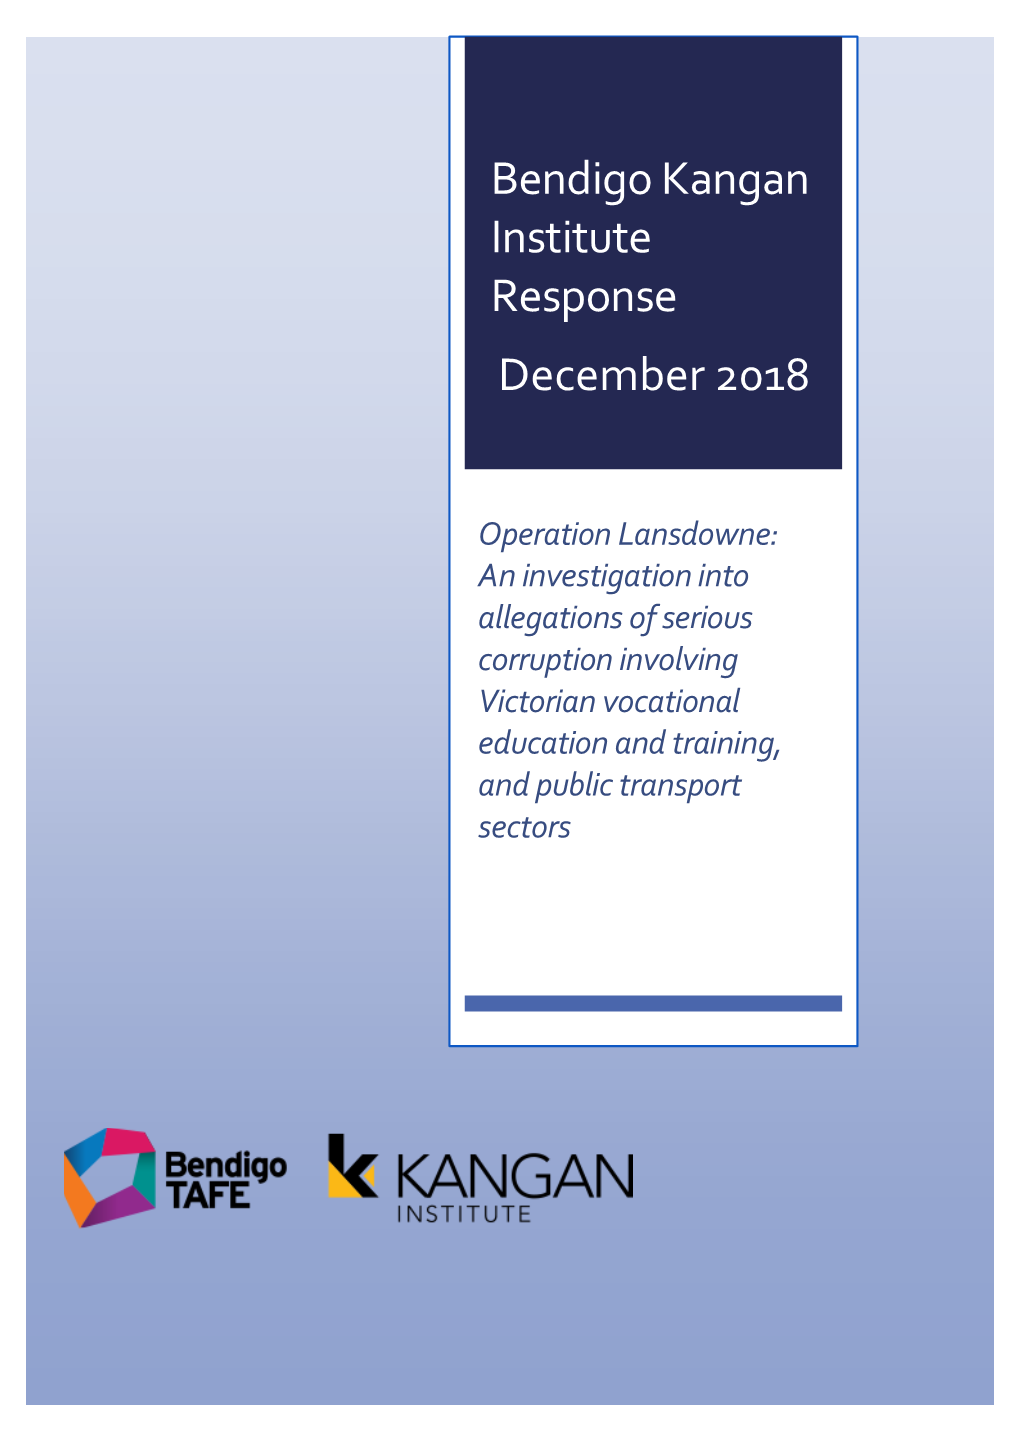 Bendigo Kangan Institute Response December 2018